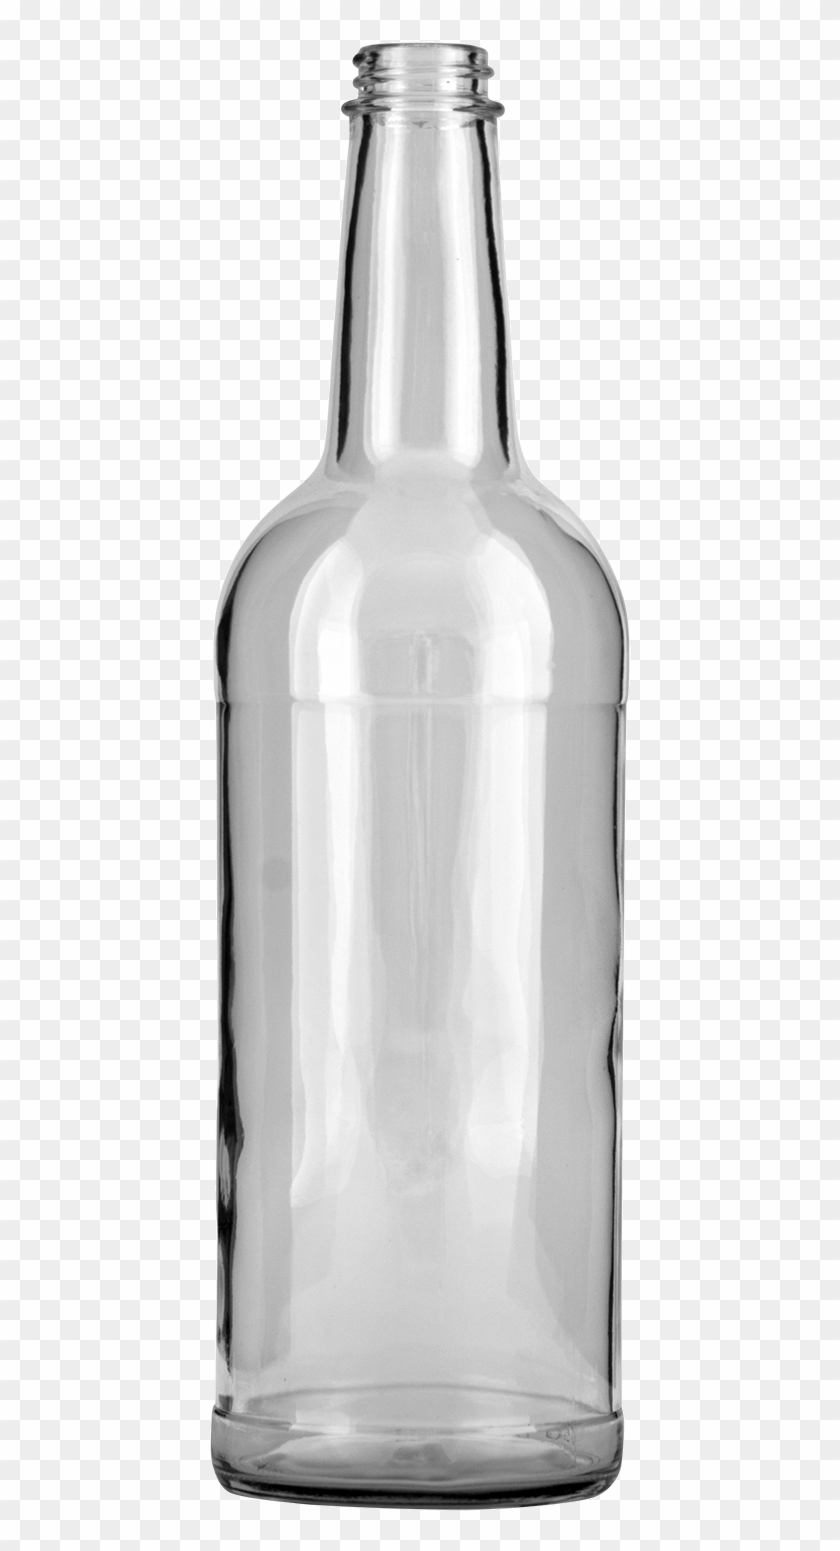 Liquor Bottle Br Ml - Two-liter Bottle Clipart #1295235